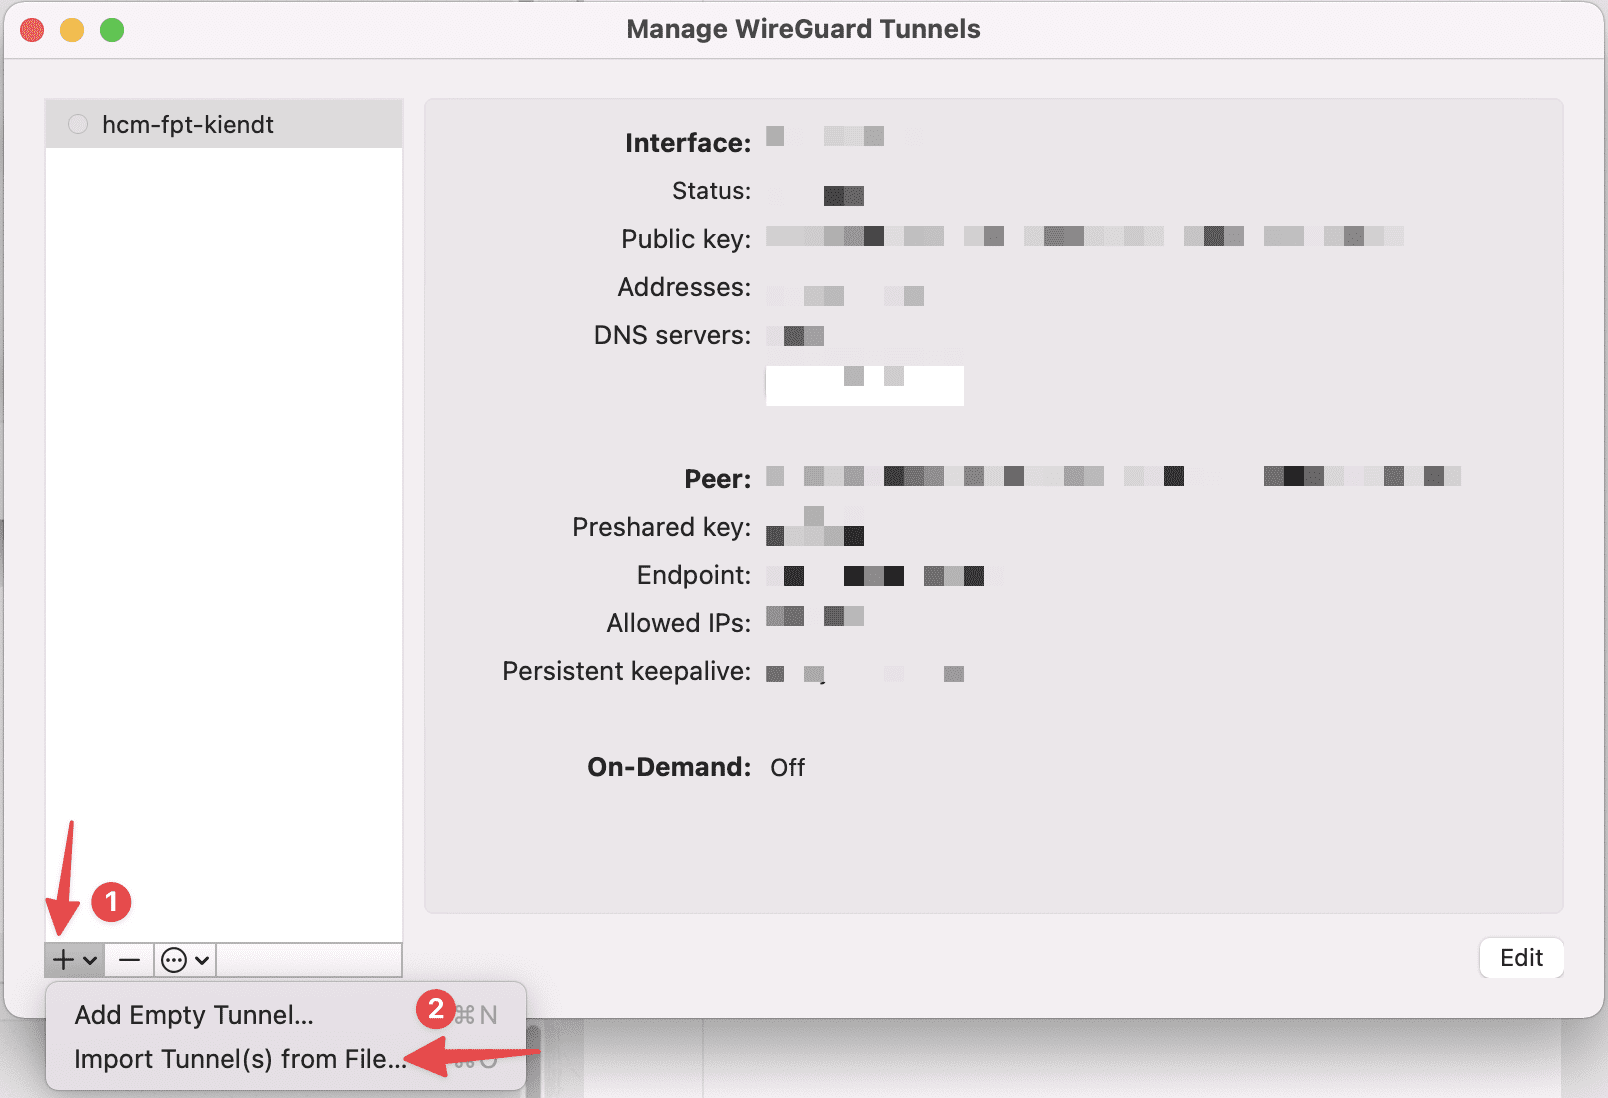 Cài đặt WireGuard với Docker Compose trên Ubuntu 22.04